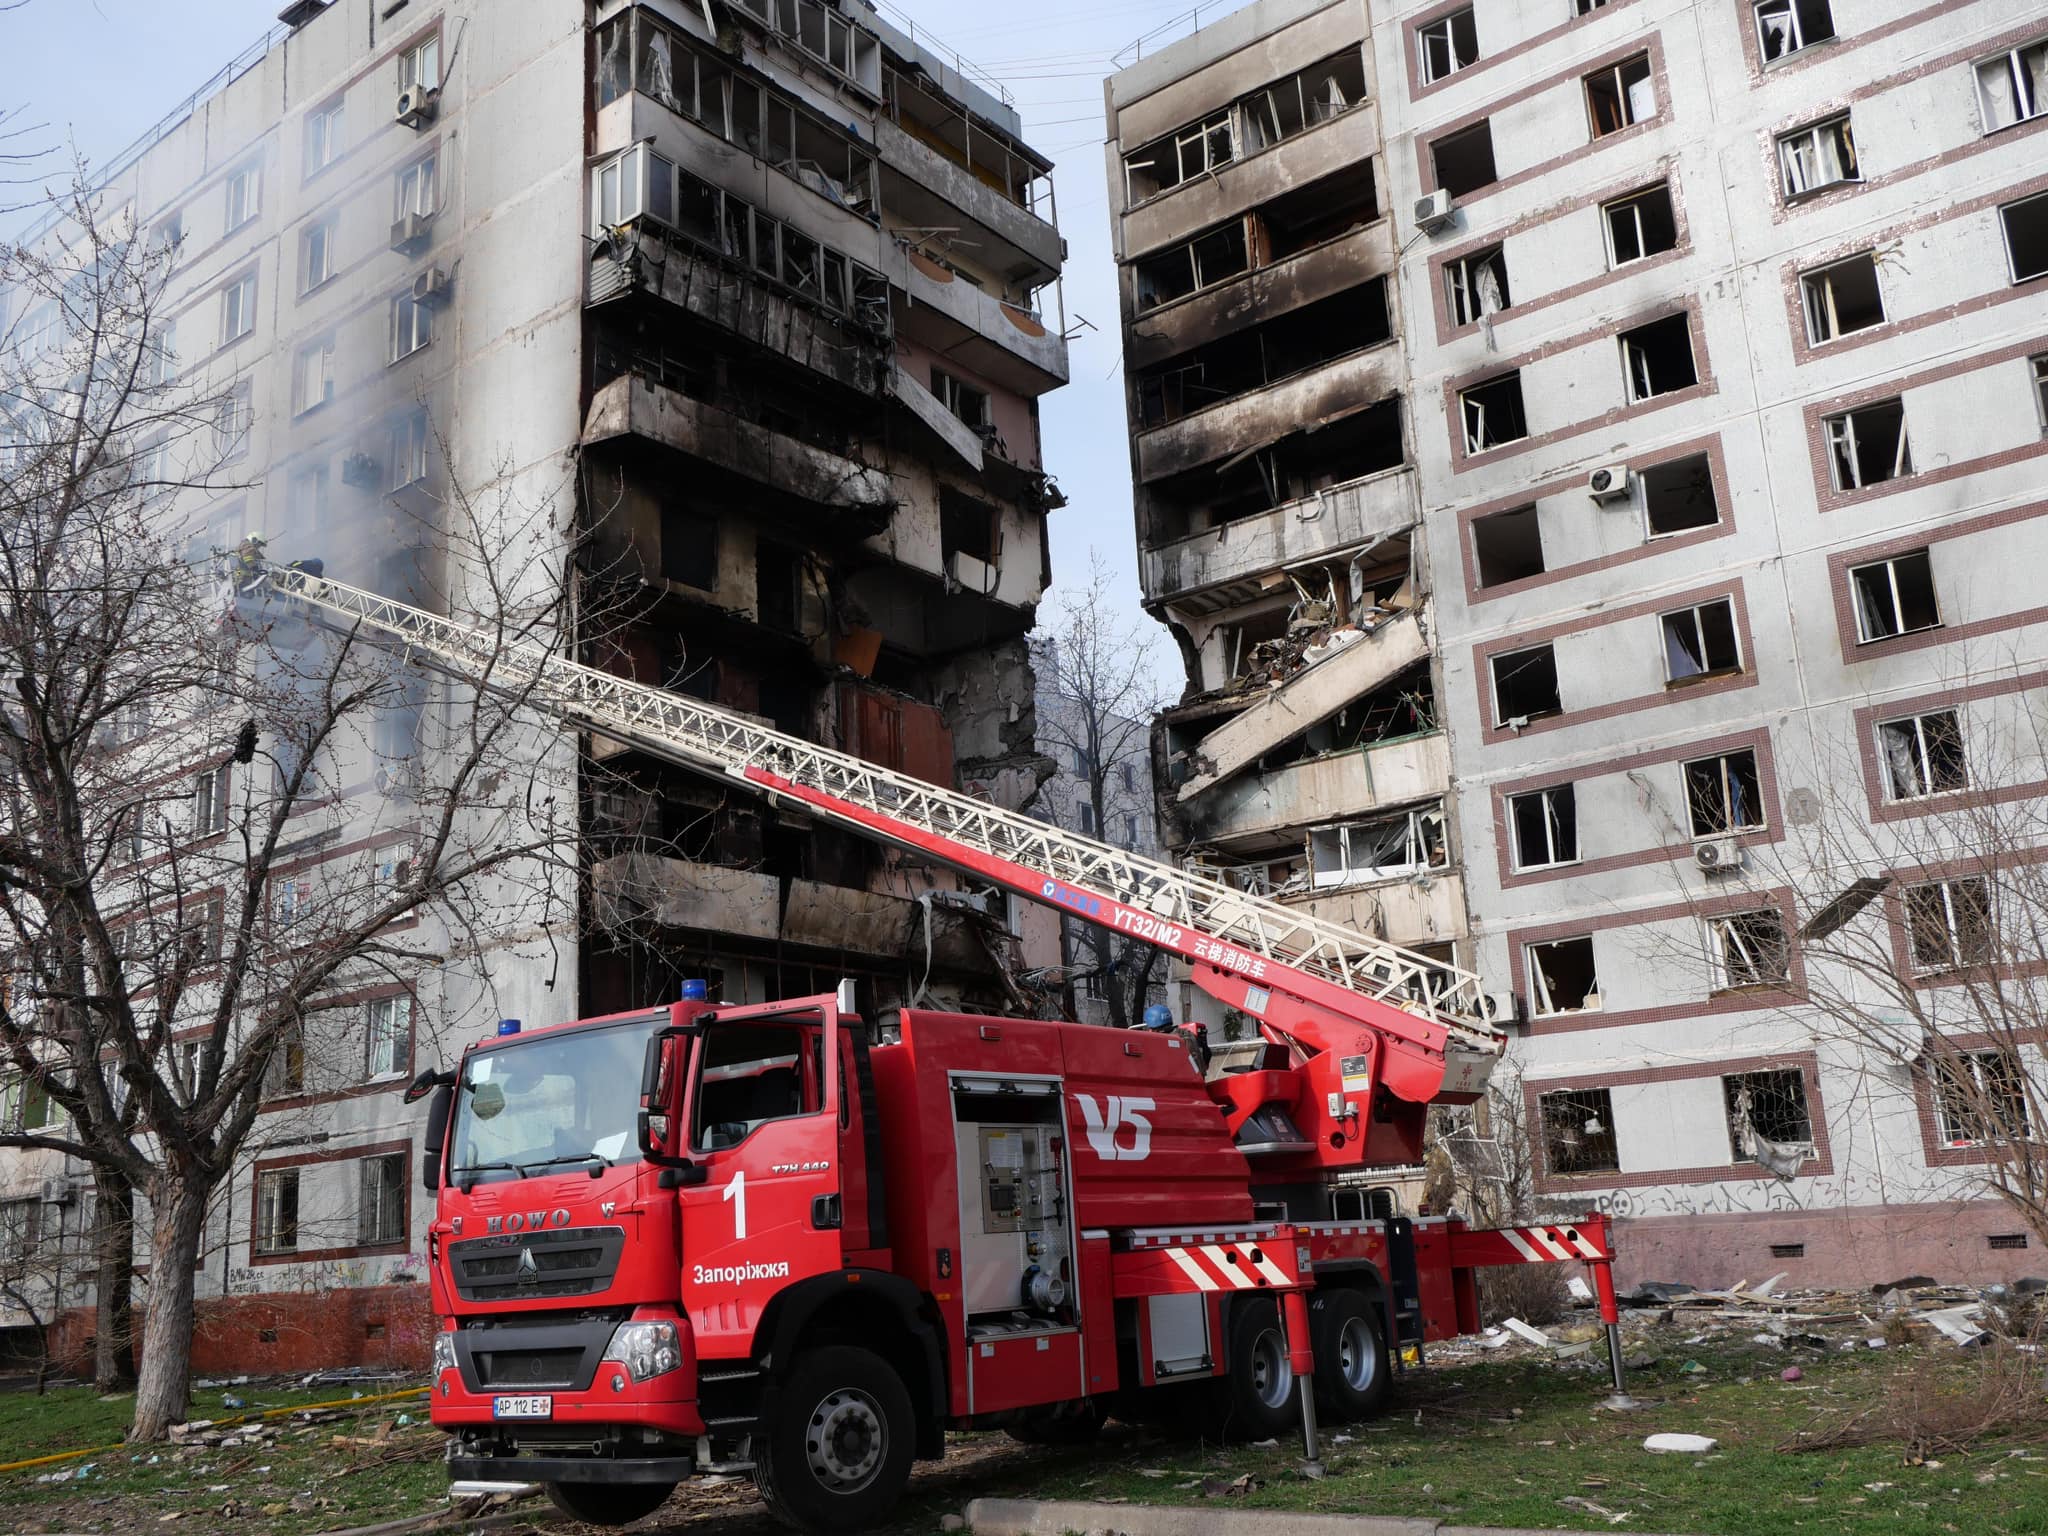 Рятувальна операція в Запоріжжі завершена: від російської атаки загалом 34 людини постраждали, з них троє дітей, одна людина померла (ФОТО) 16